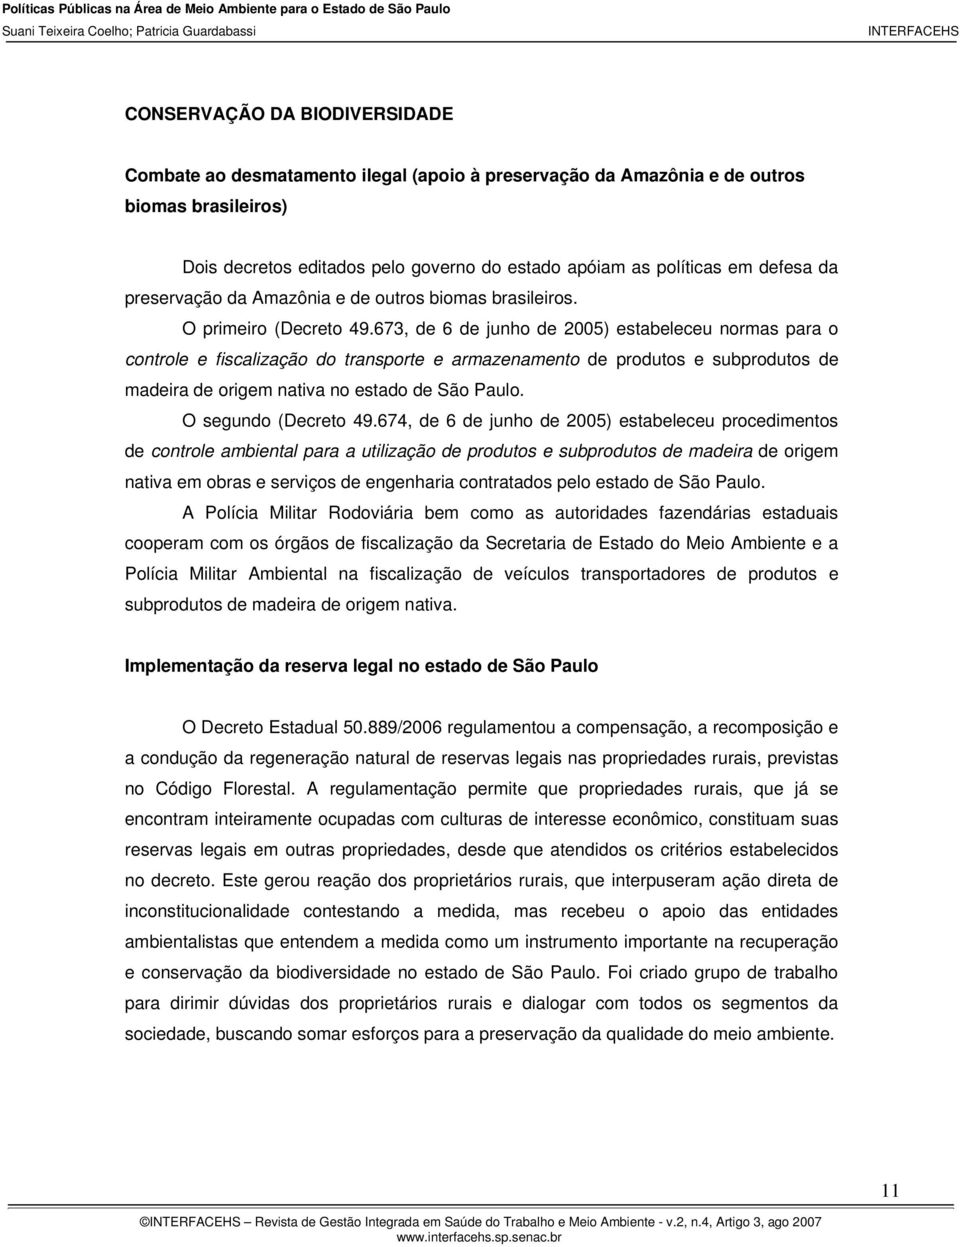 673, de 6 de junho de 2005) estabeleceu normas para o controle e fiscalização do transporte e armazenamento de produtos e subprodutos de madeira de origem nativa no estado de São Paulo.